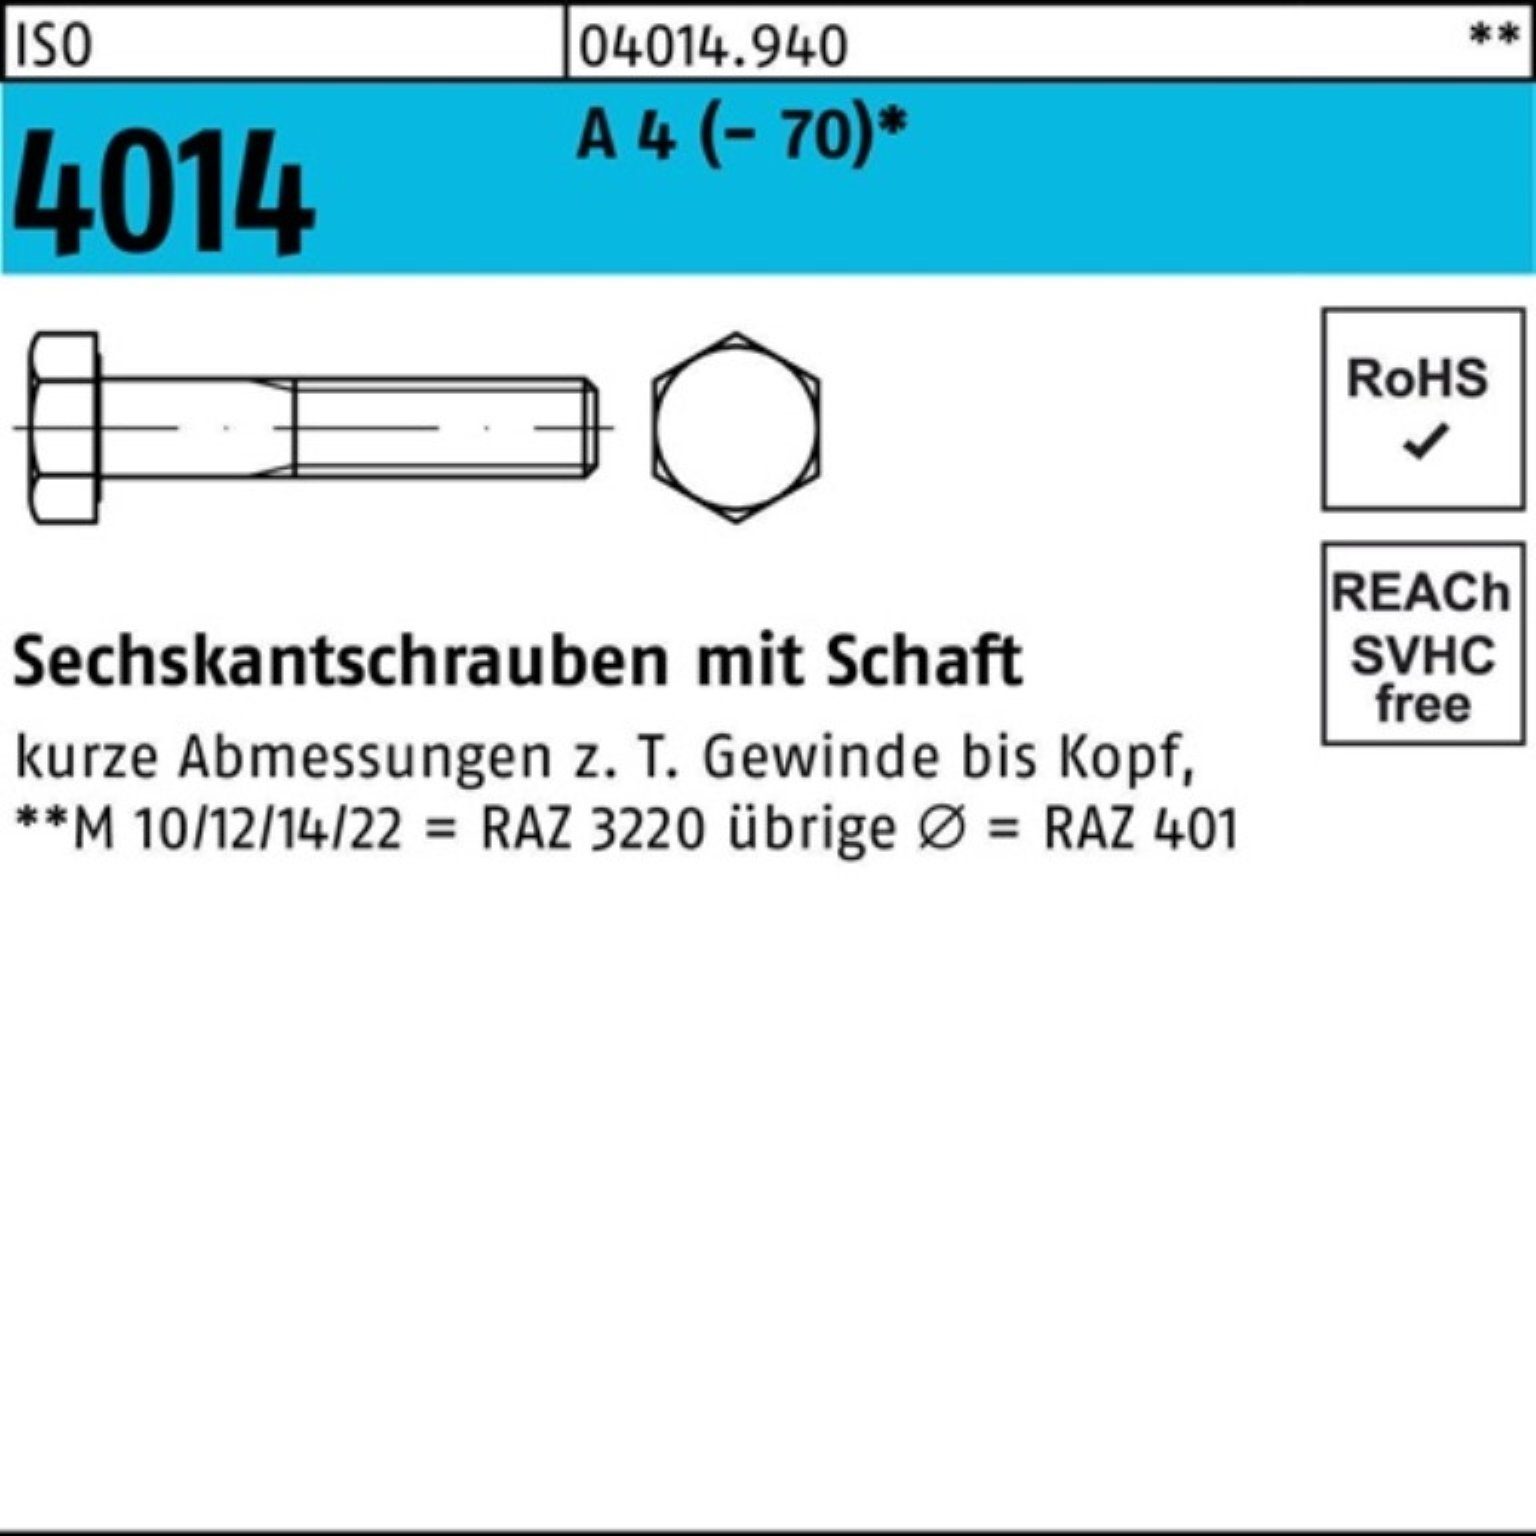 100 St 4 Sechskantschraube Bufab Schaft 100er 4014 (70) 100 Pack M5x Sechskantschraube A ISO